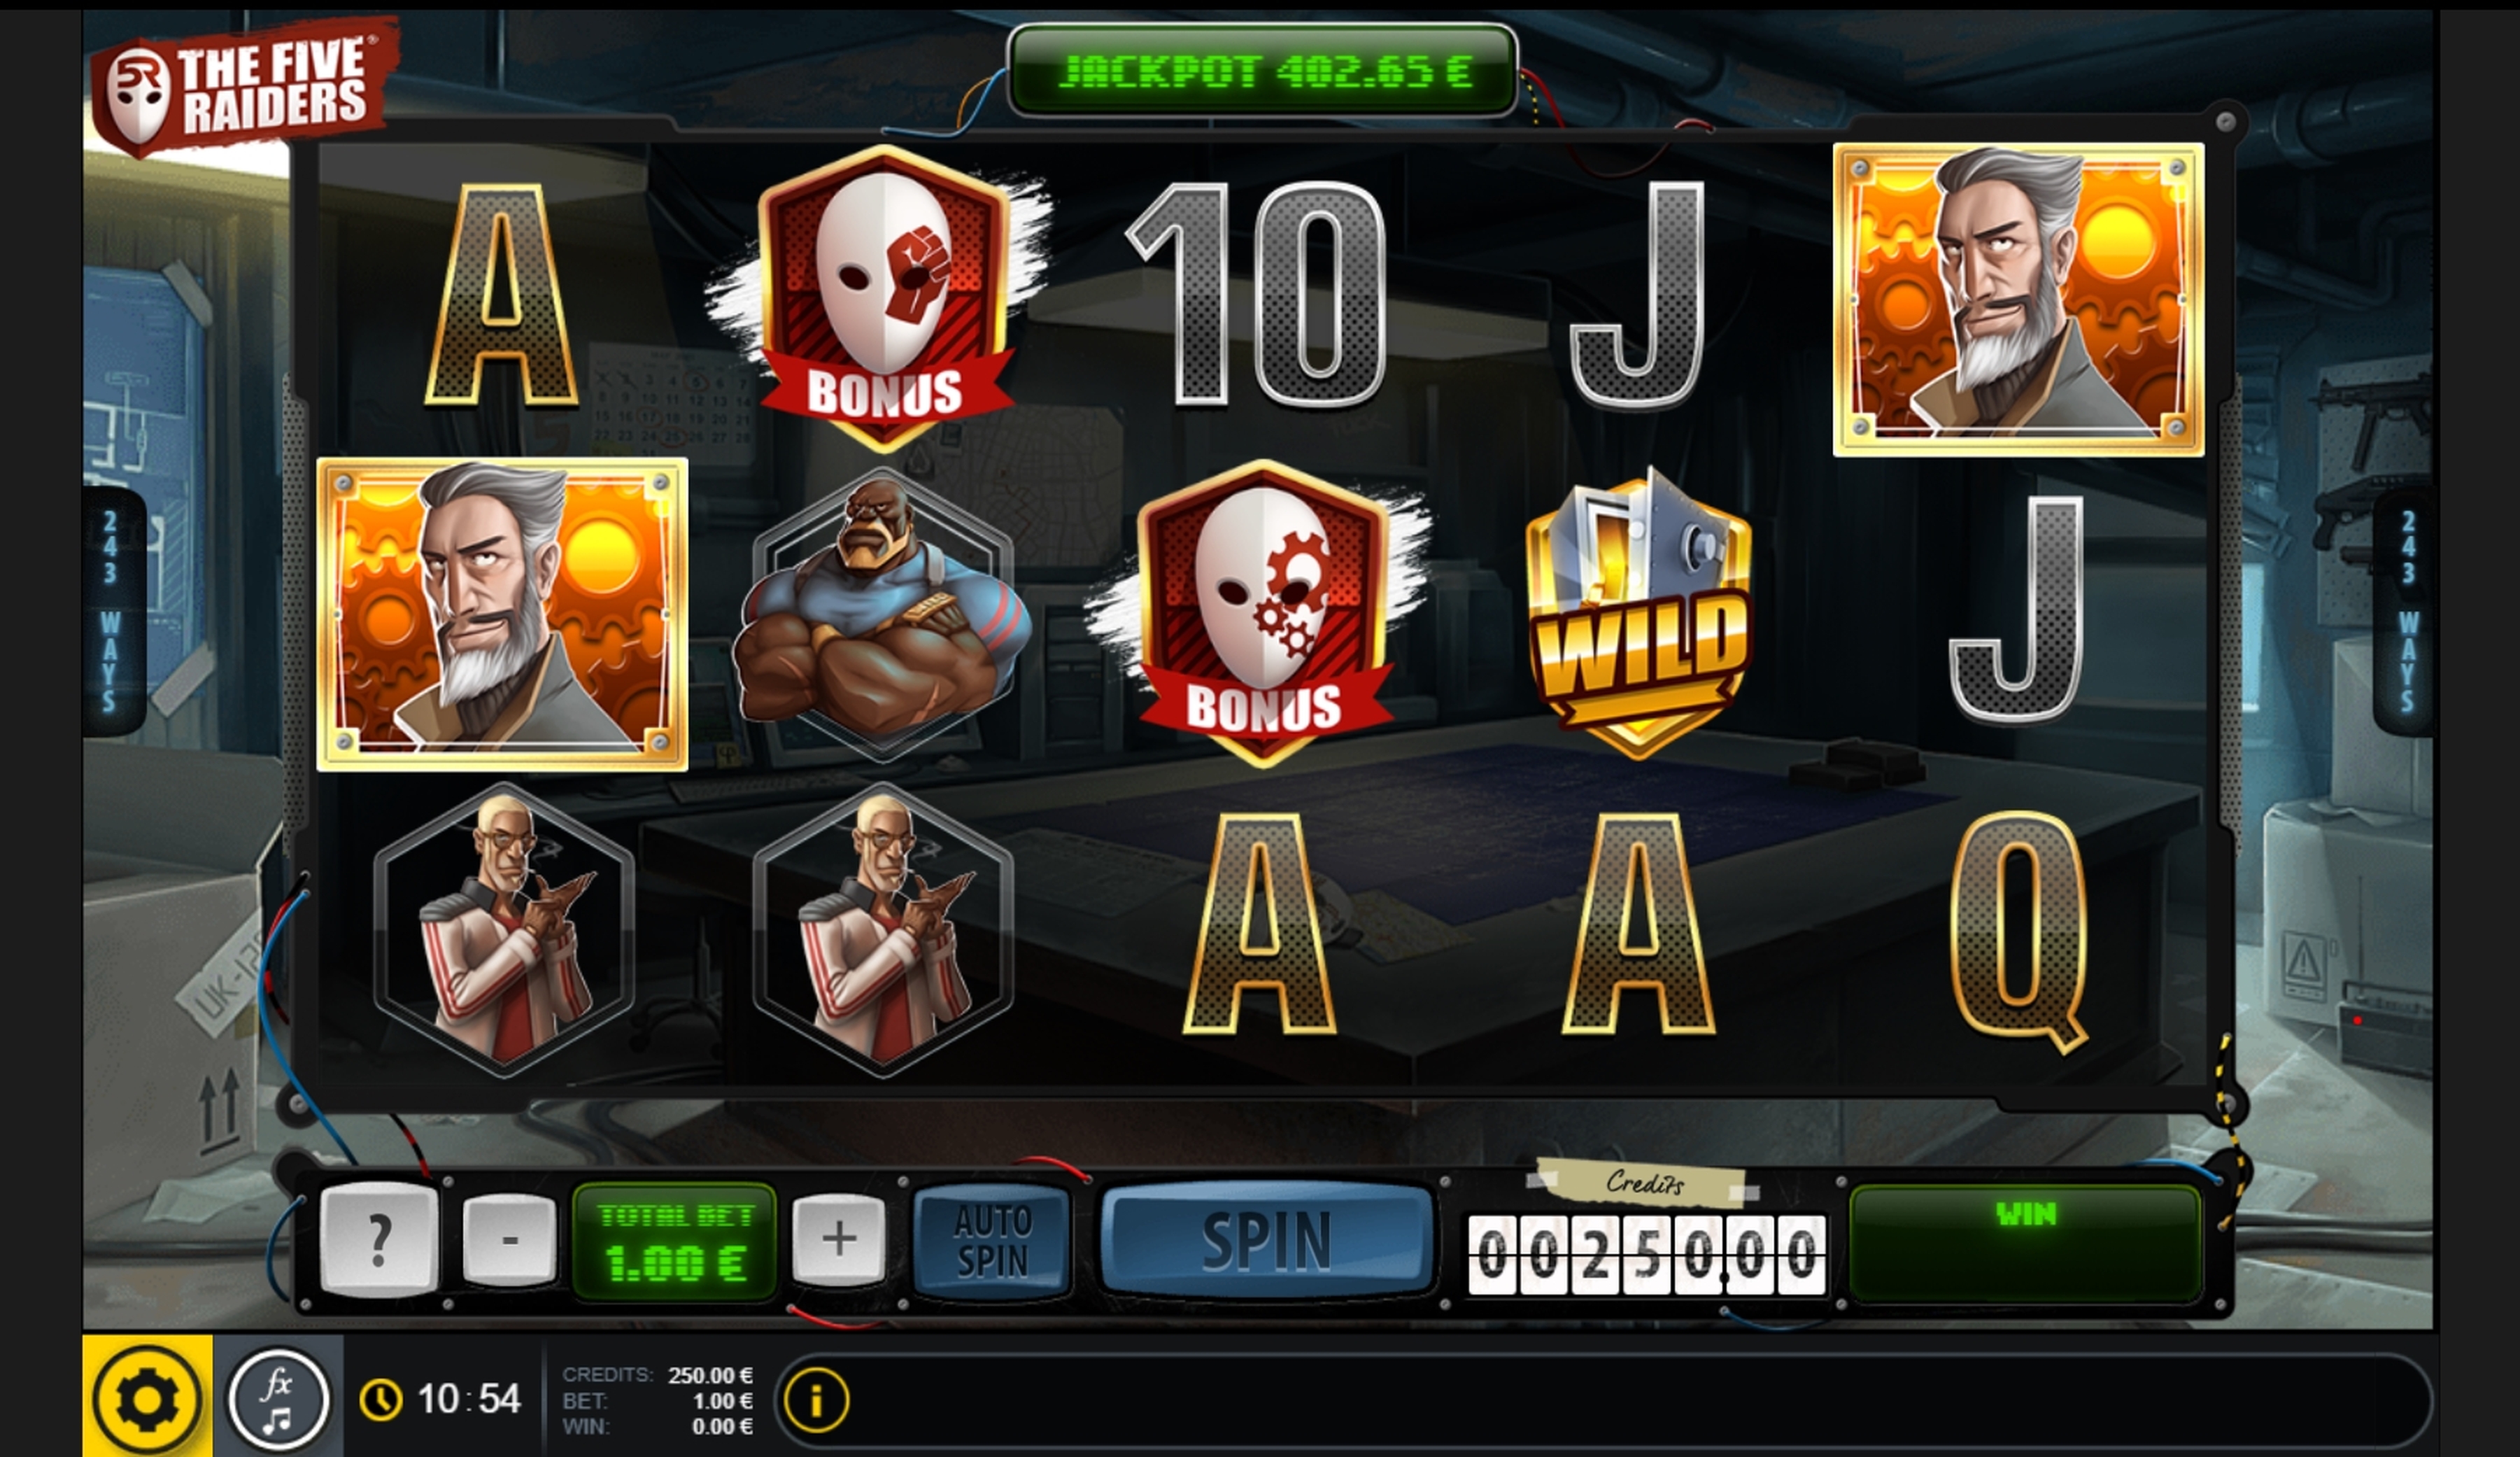 Reels in Five Raiders Slot Game by GAMING1